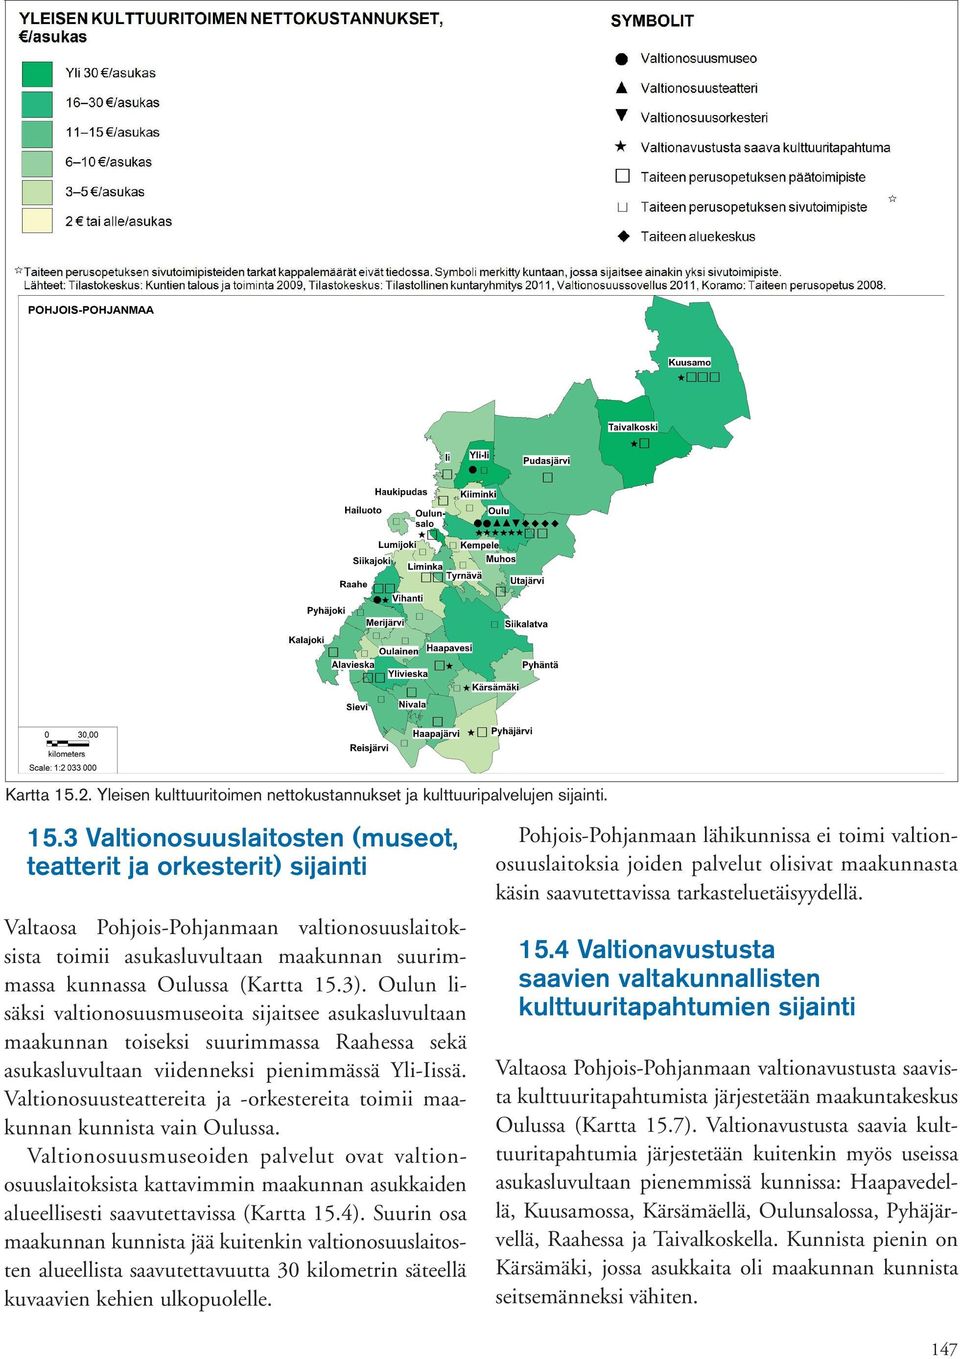 3 Valtionosuuslaitosten (museot, teatterit ja orkesterit) sijainti Valtaosa Pohjois-Pohjanmaan valtionosuuslaitoksista toimii asukasluvultaan maakunnan suurimmassa kunnassa Oulussa (3).